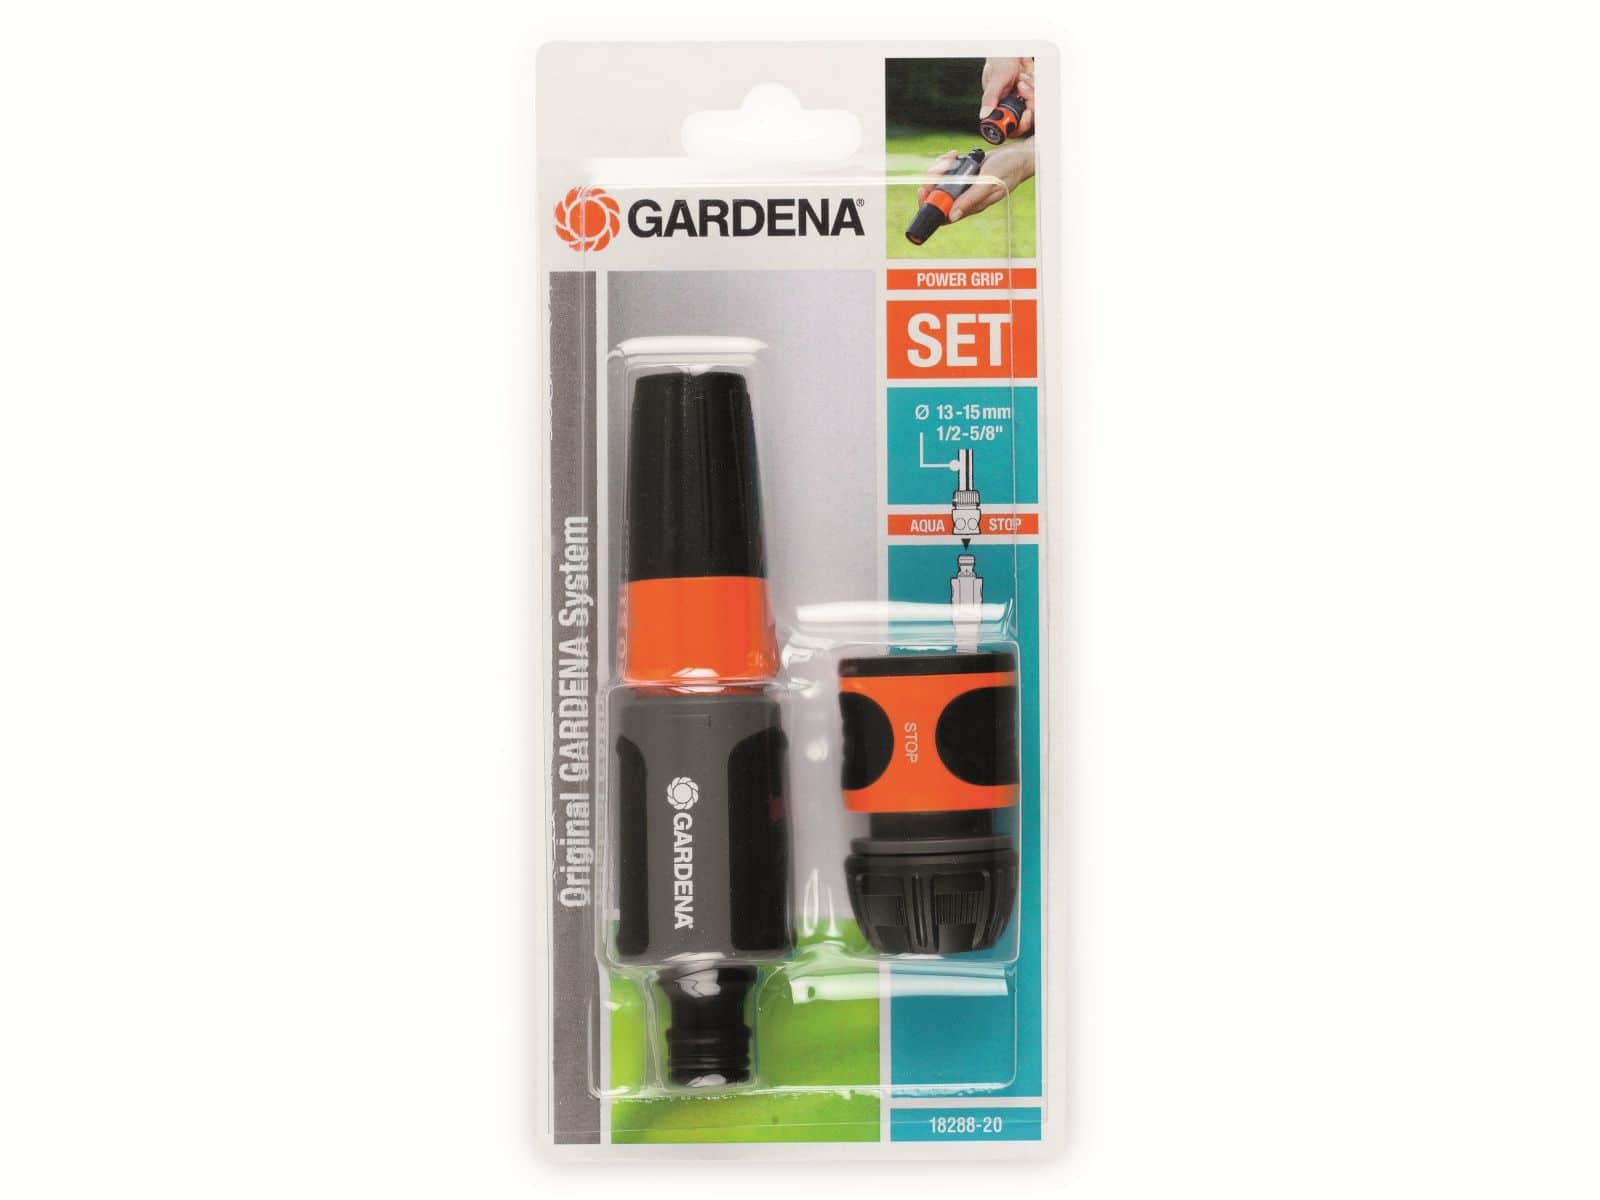 GARDENA Gartensprüher-Set 18288-20, 2-teilig, 13mm (1/2") von Gardena